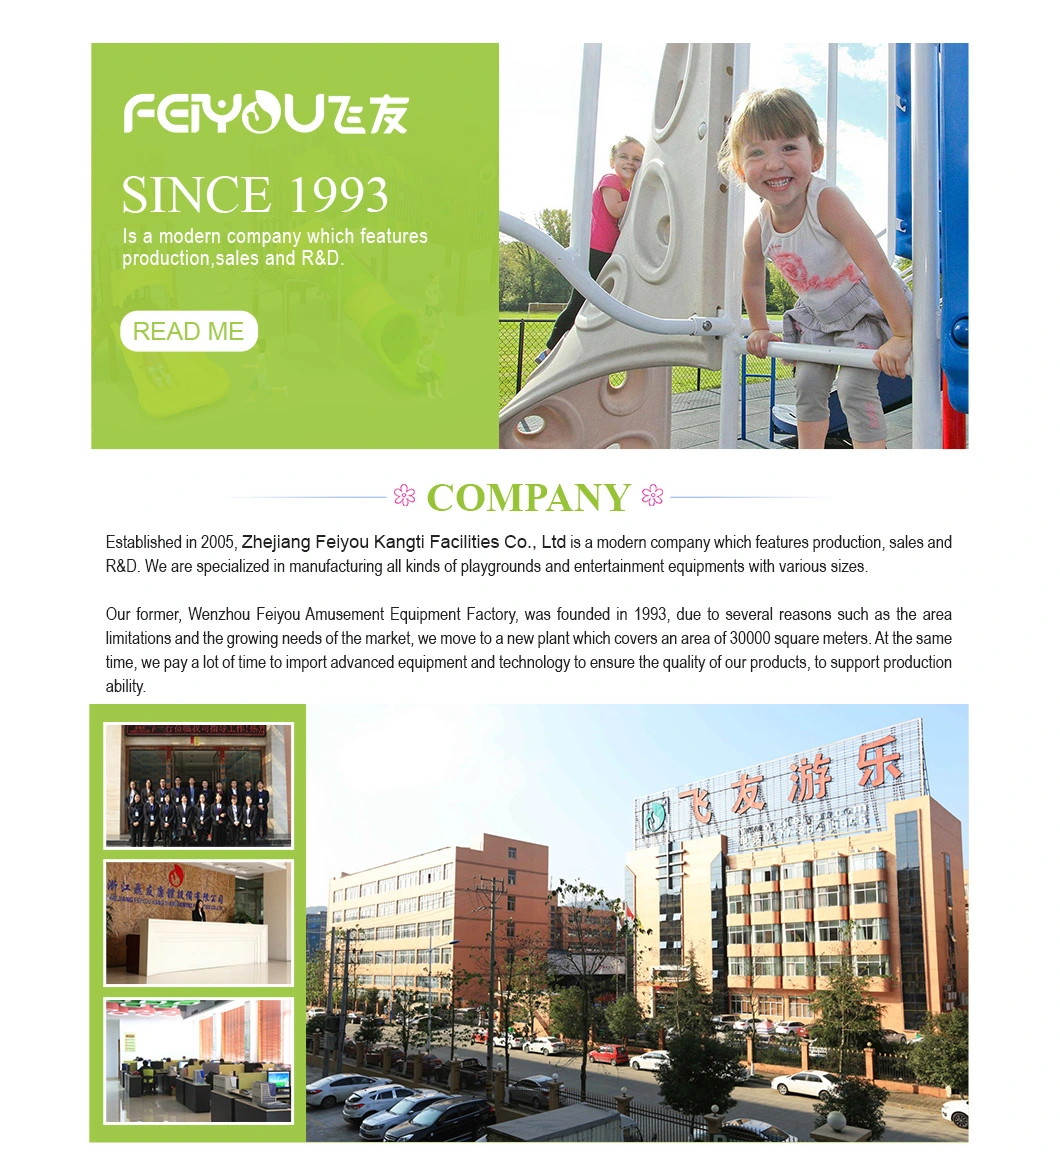 China Feiyou Children Plastic Outdoor Playground Slide Equipment Tube Slide spiral Slide